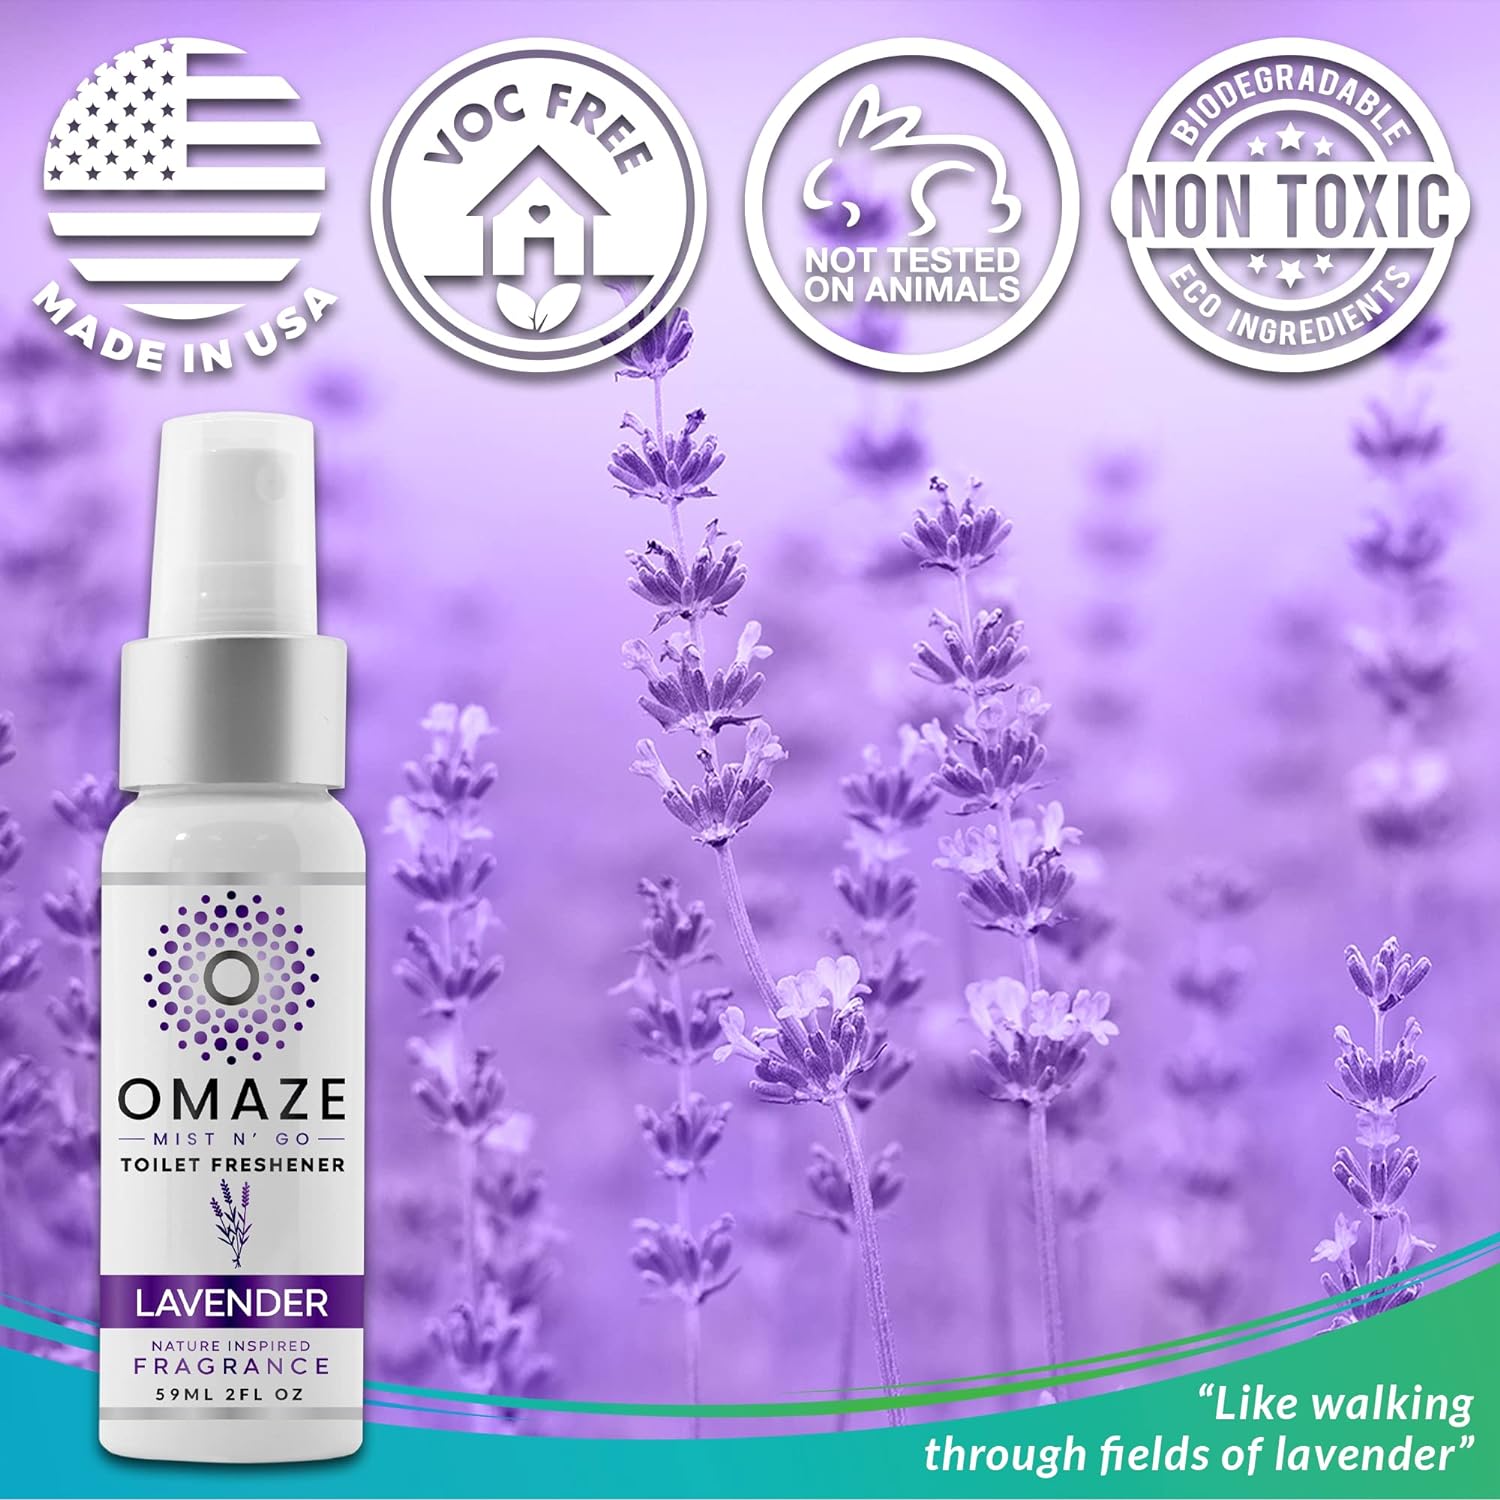 OMAZE Mist N Go Toilet Freshener, Lavender Scent 2Fl Oz (2 Pack) | Odor Neutralizer for Toilets : Health & Household